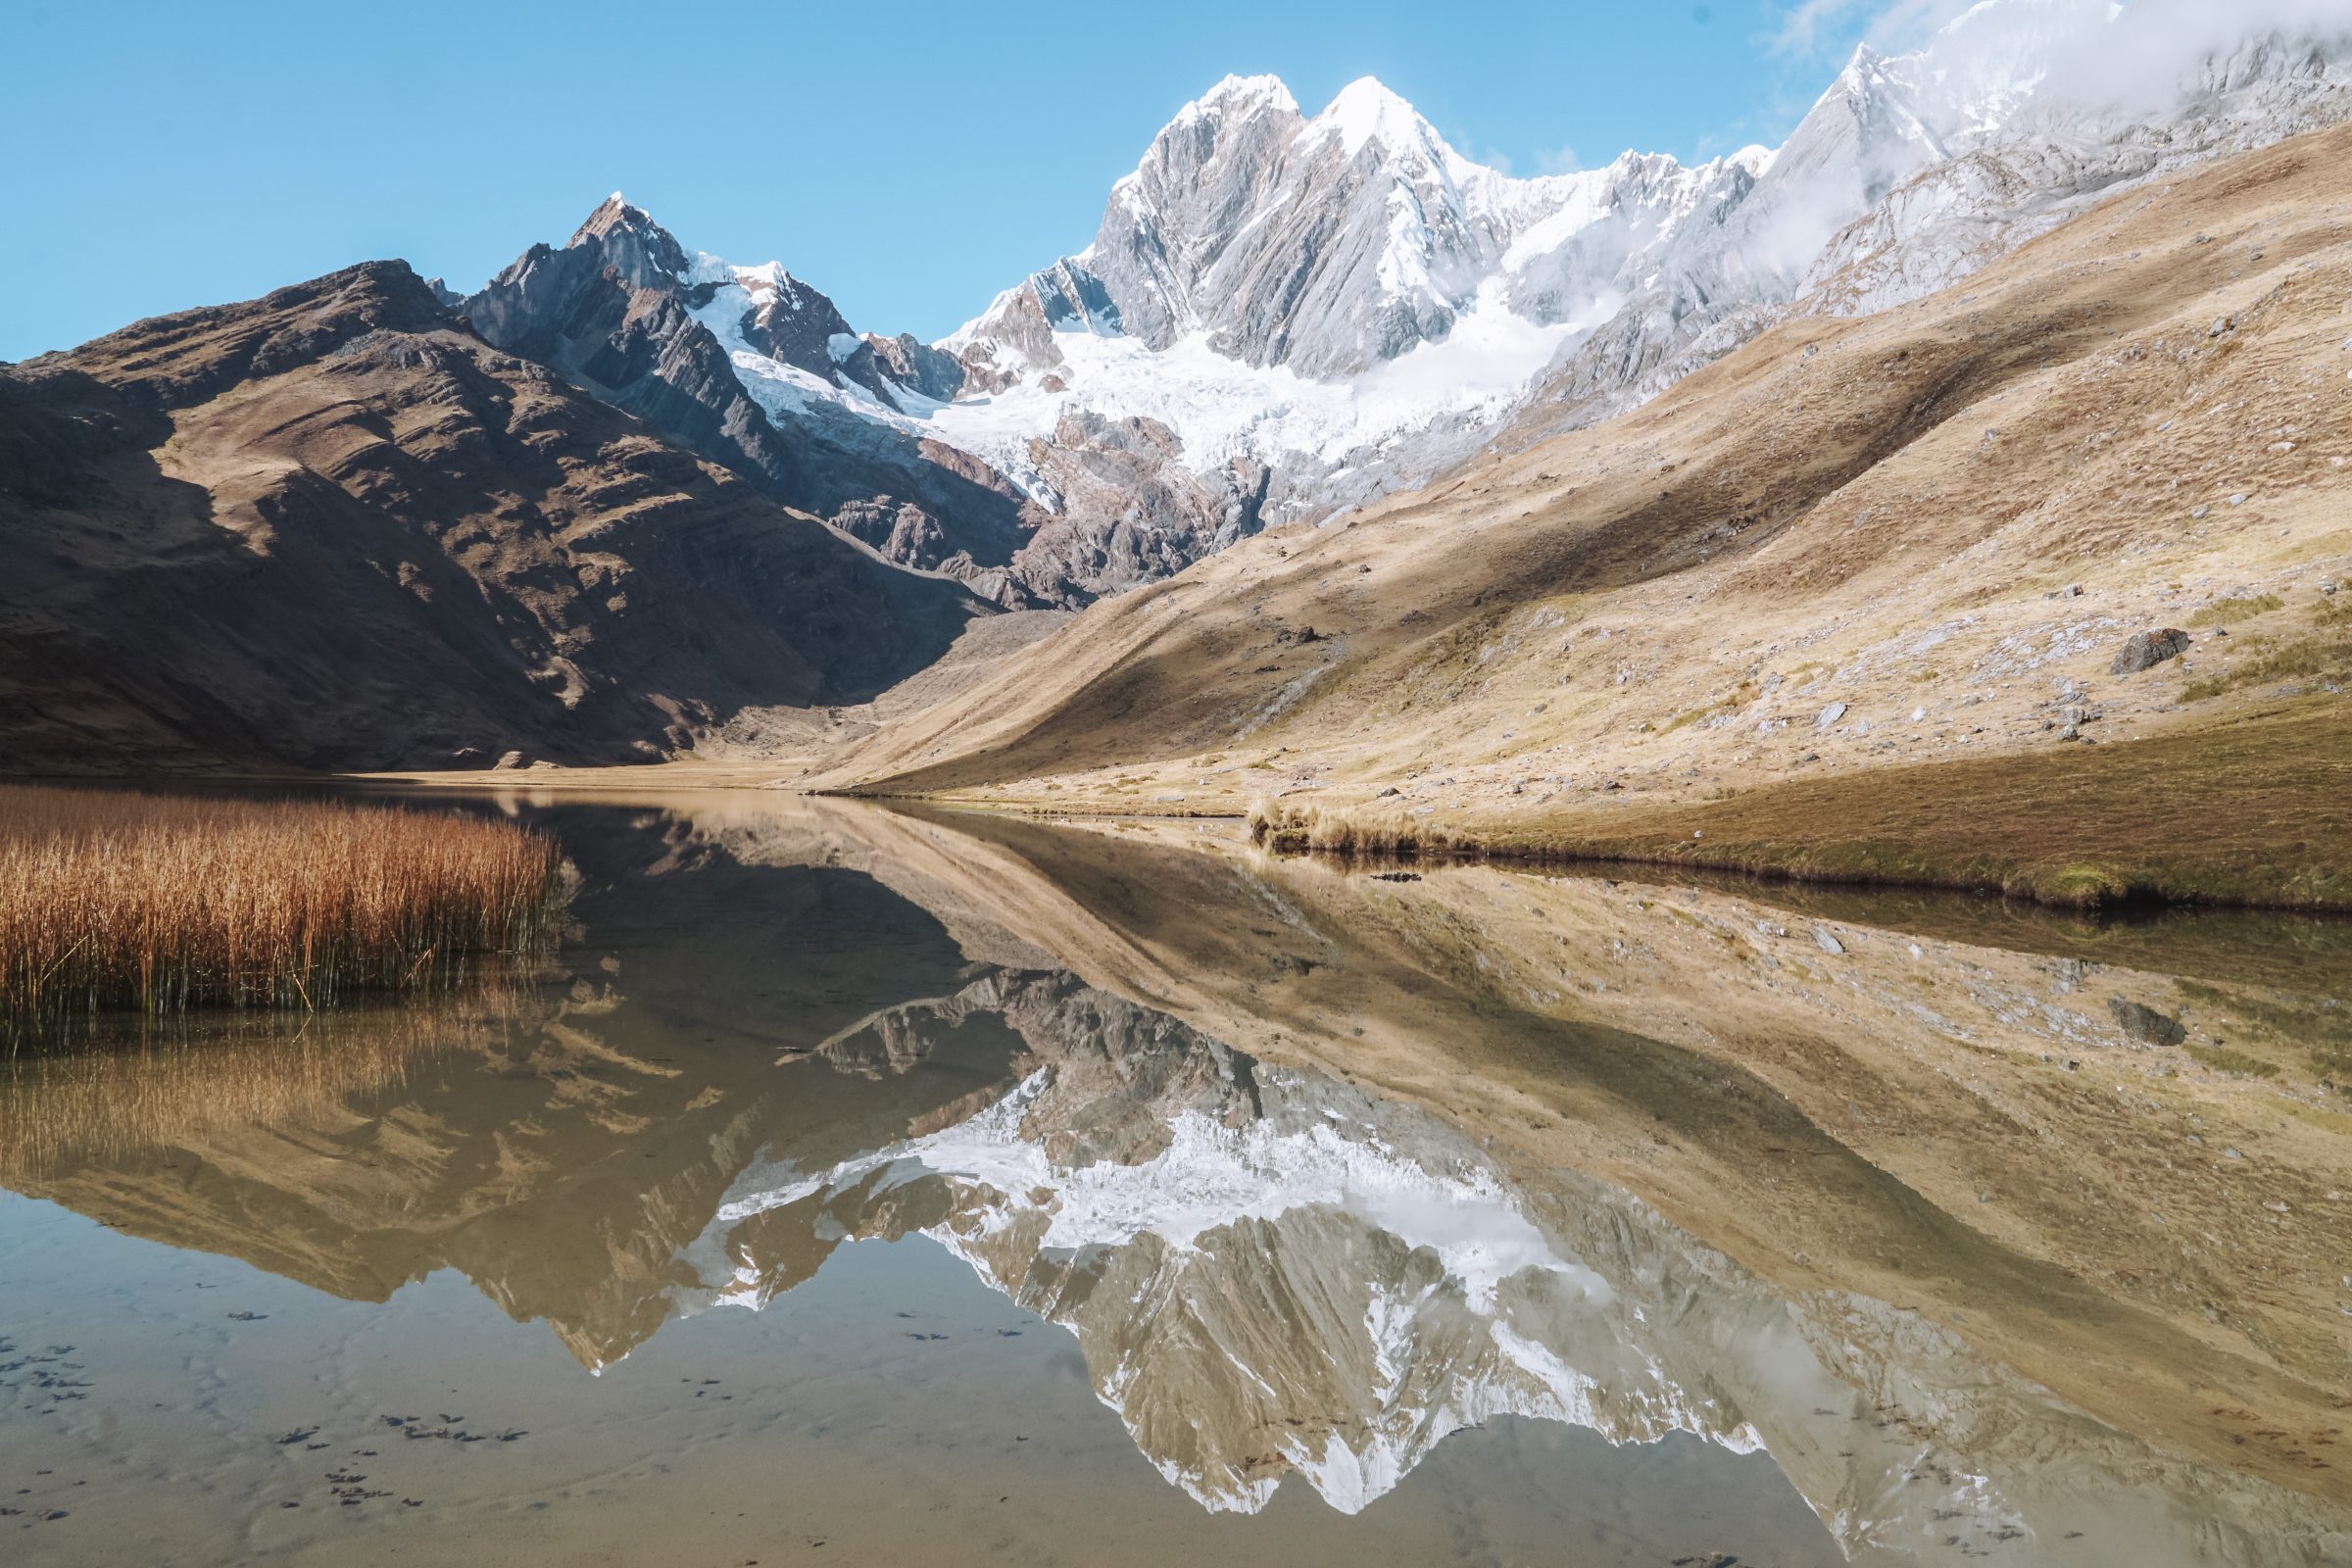 Spiegelung im Wasser eines der vielen schönen Berge während der Wanderung | Huayhuash